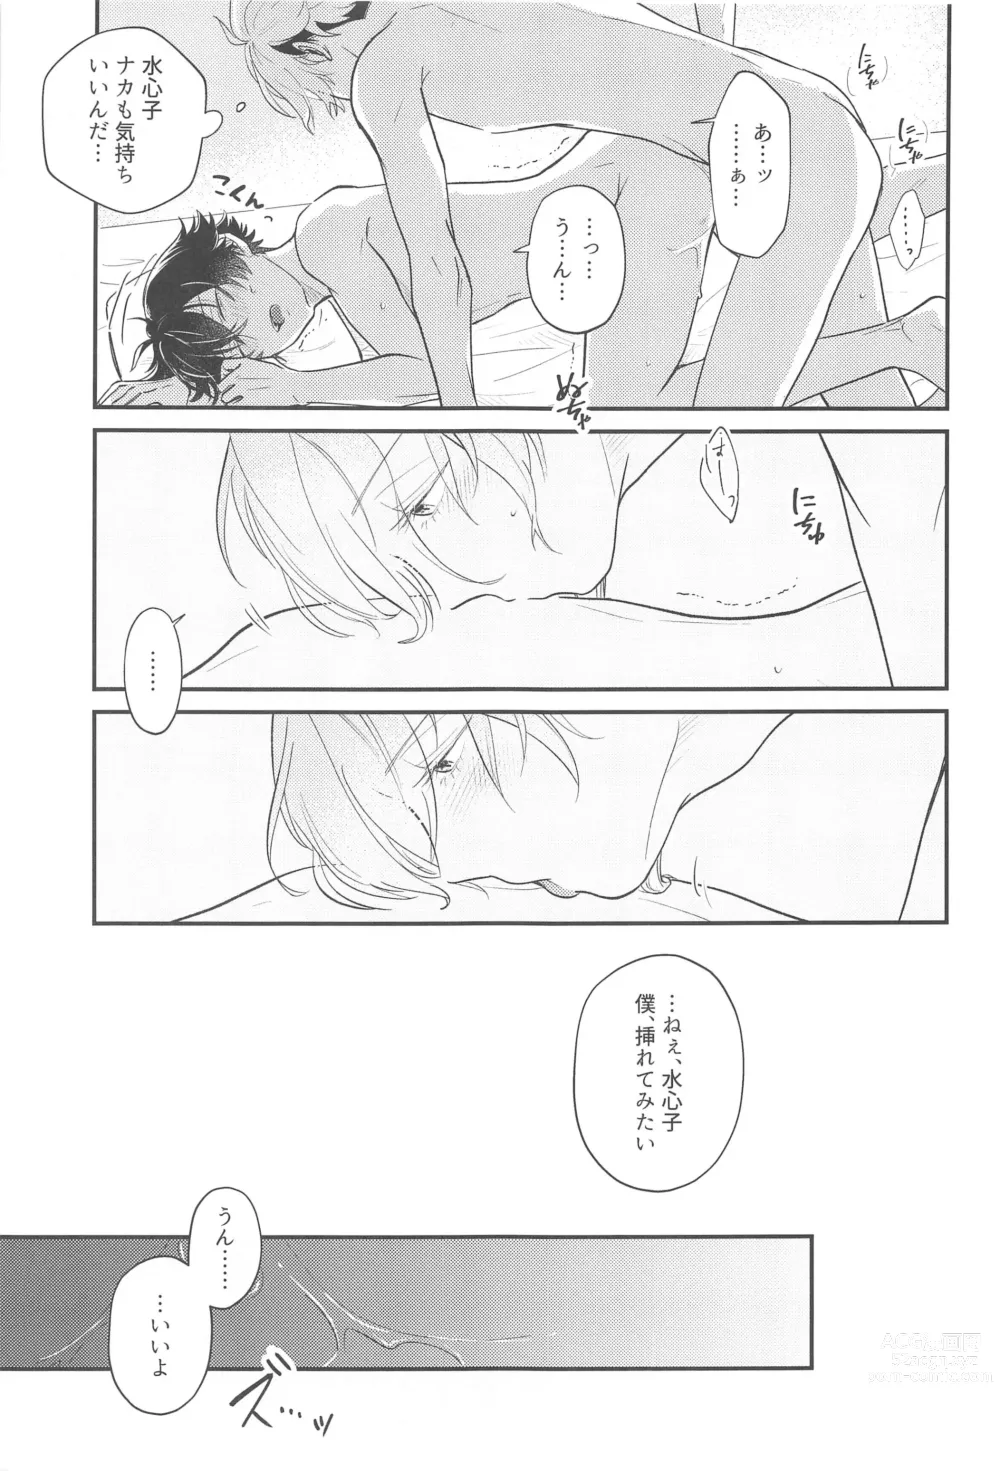 Page 16 of doujinshi Sonosaki wa Ariarito